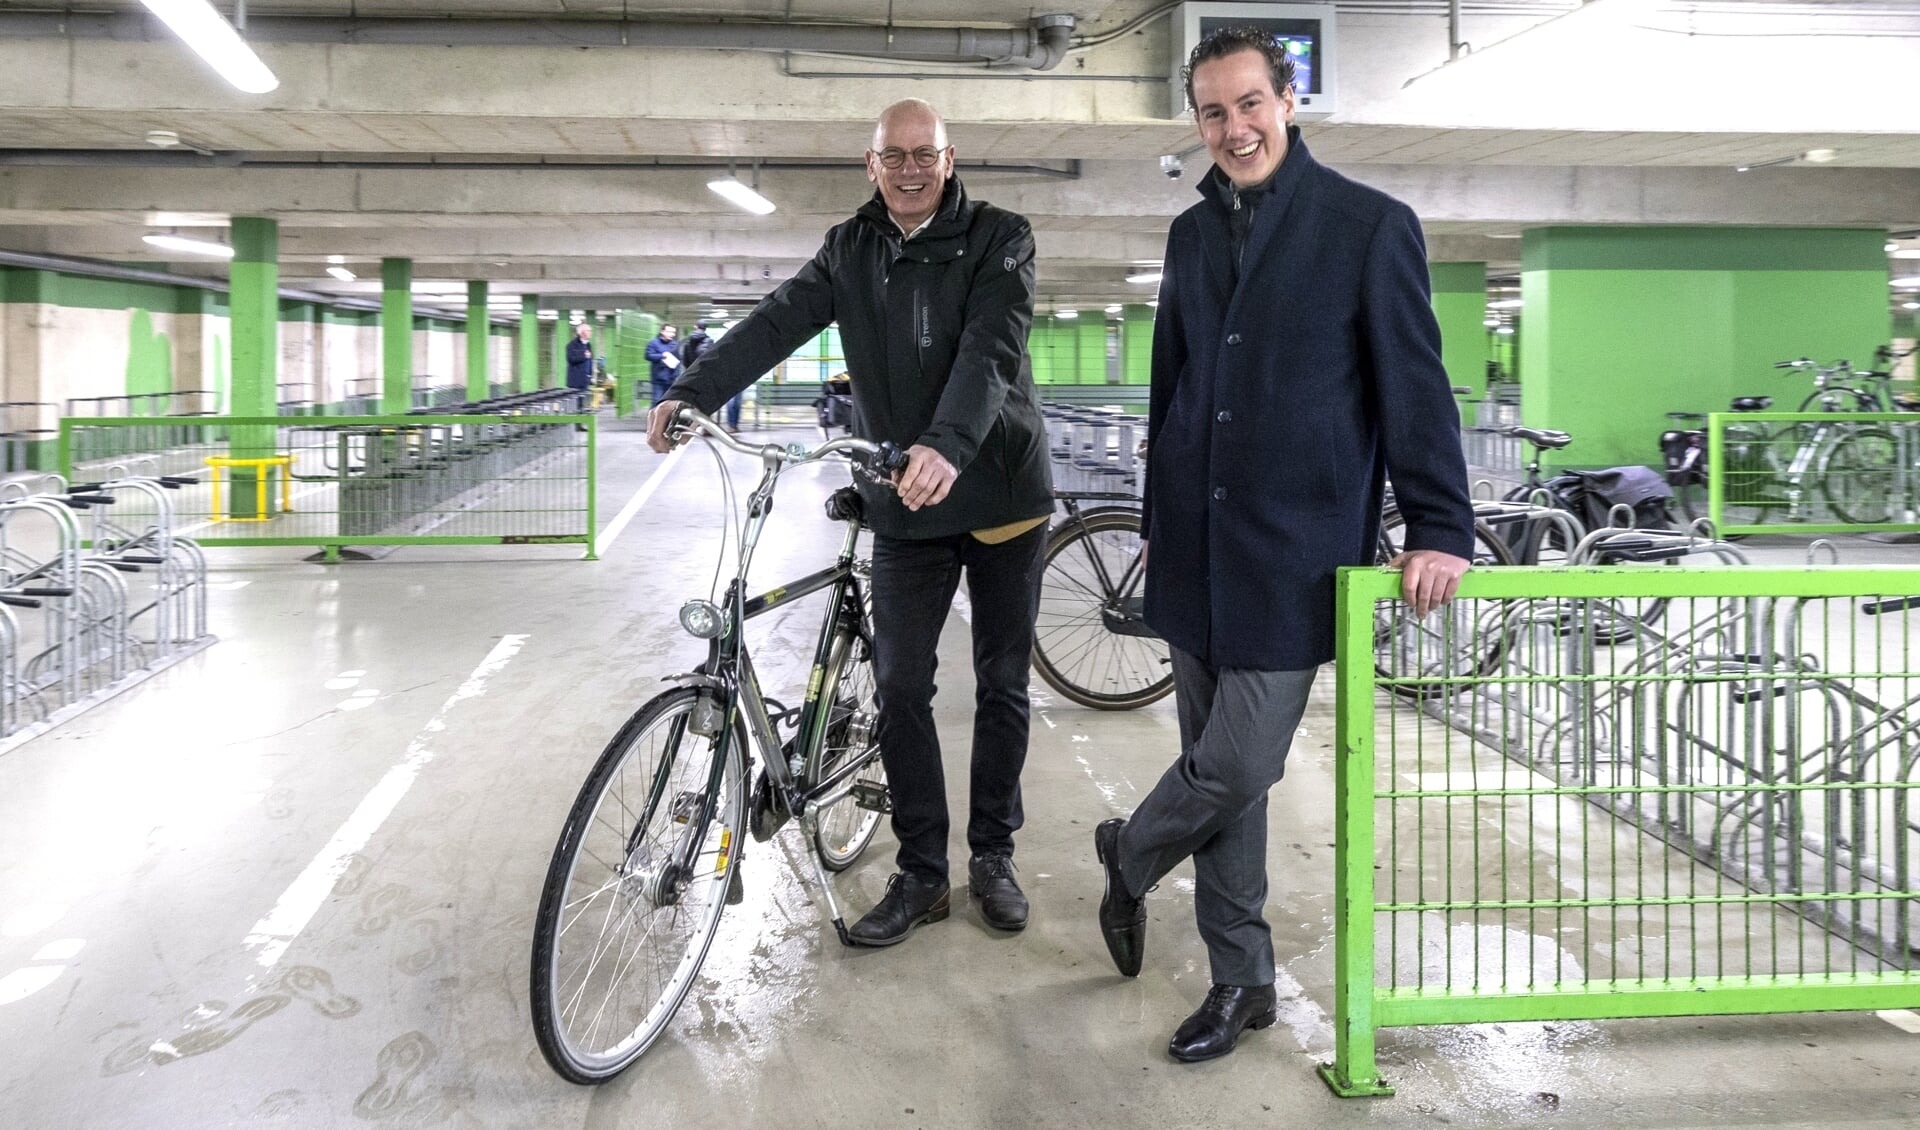 Wethouders Jan Martin van Rees van de Binnenstad en Arjen Maathuis van Verkeer willen het makkelijk maken de fiets op goede plek te zetten.